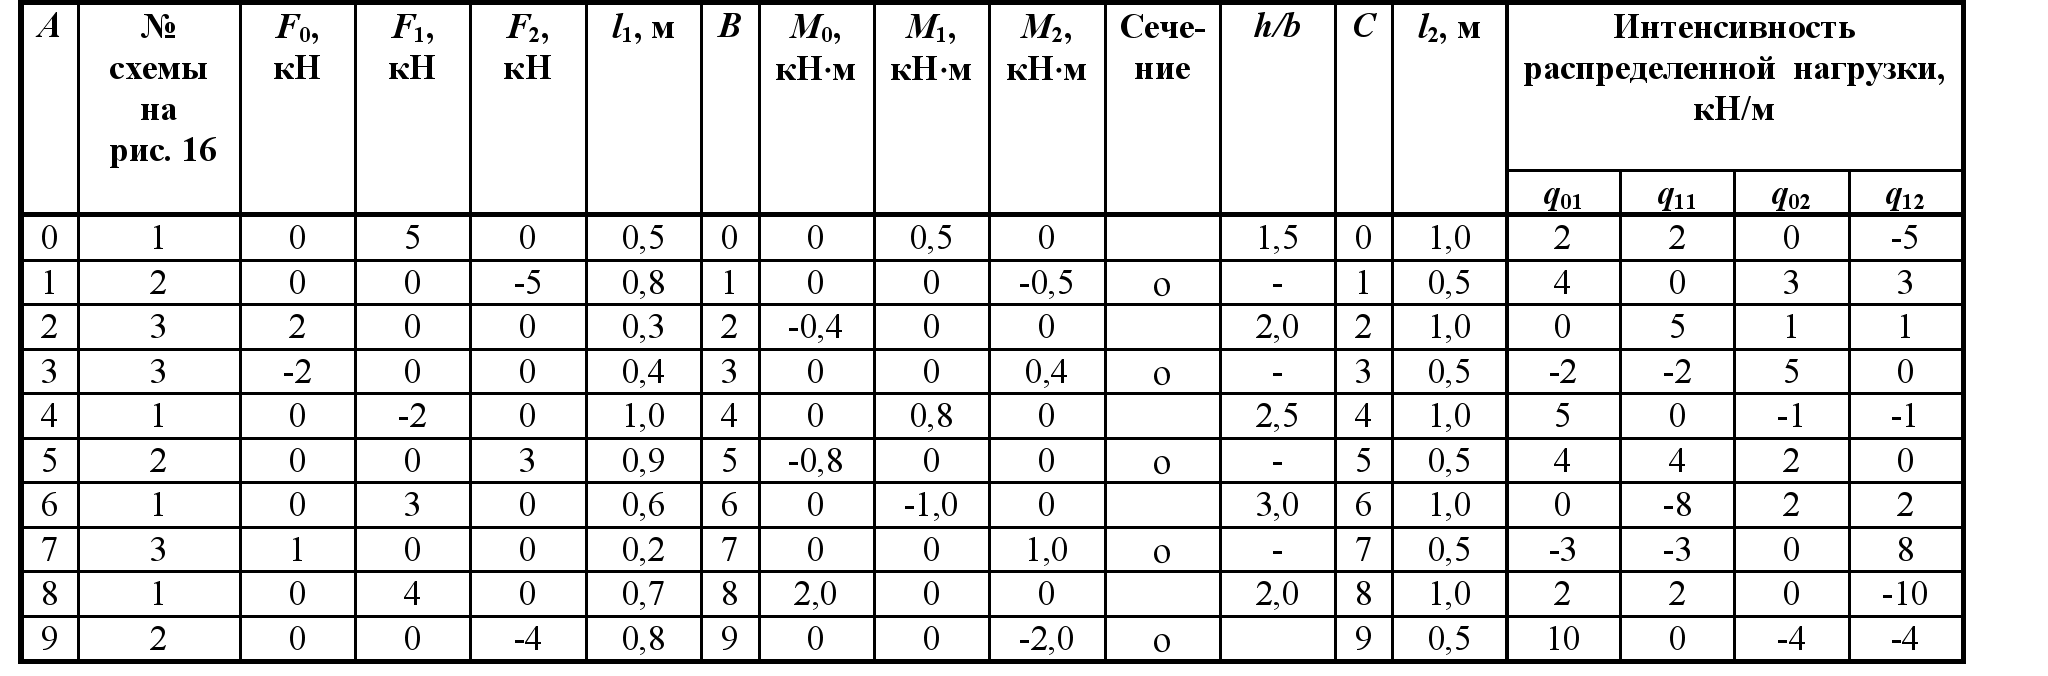 Как рассчитать сколько нужно обоев на комнату - калькулятор и полезные рекомендации